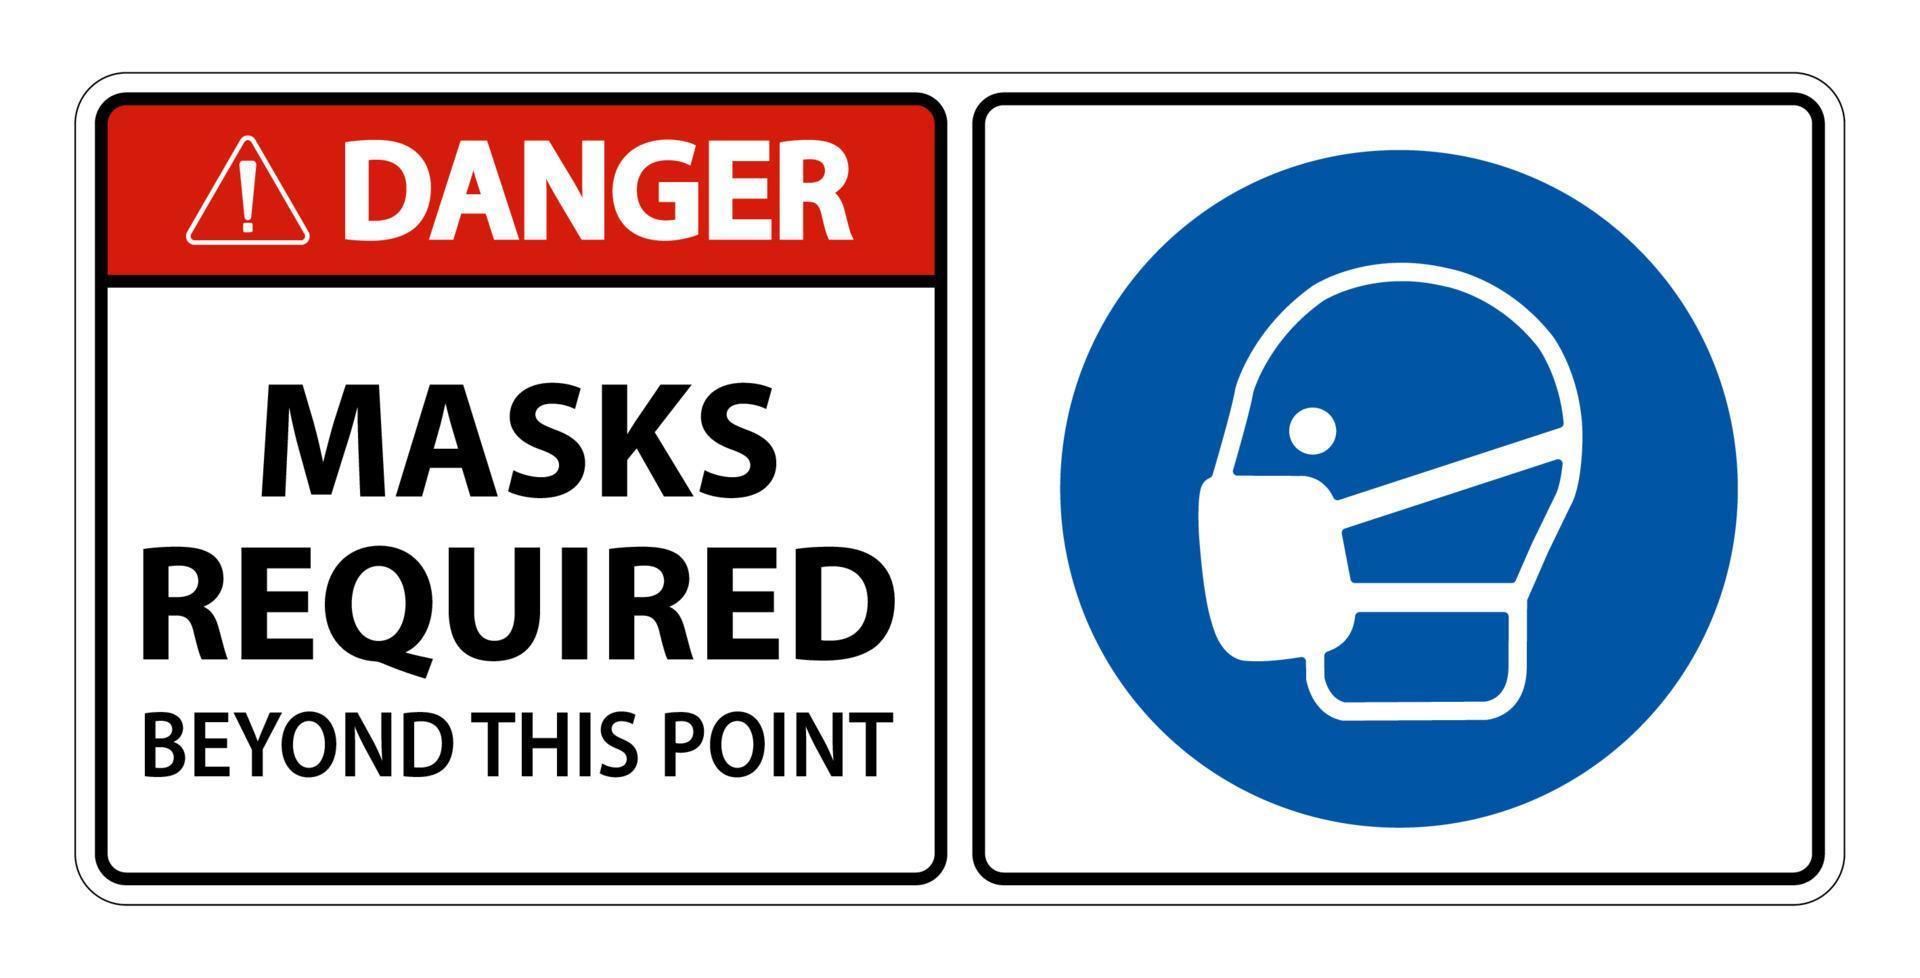 máscaras de perigo necessárias além deste sinal de ponto isoladas em fundo branco, ilustração vetorial eps.10 vetor